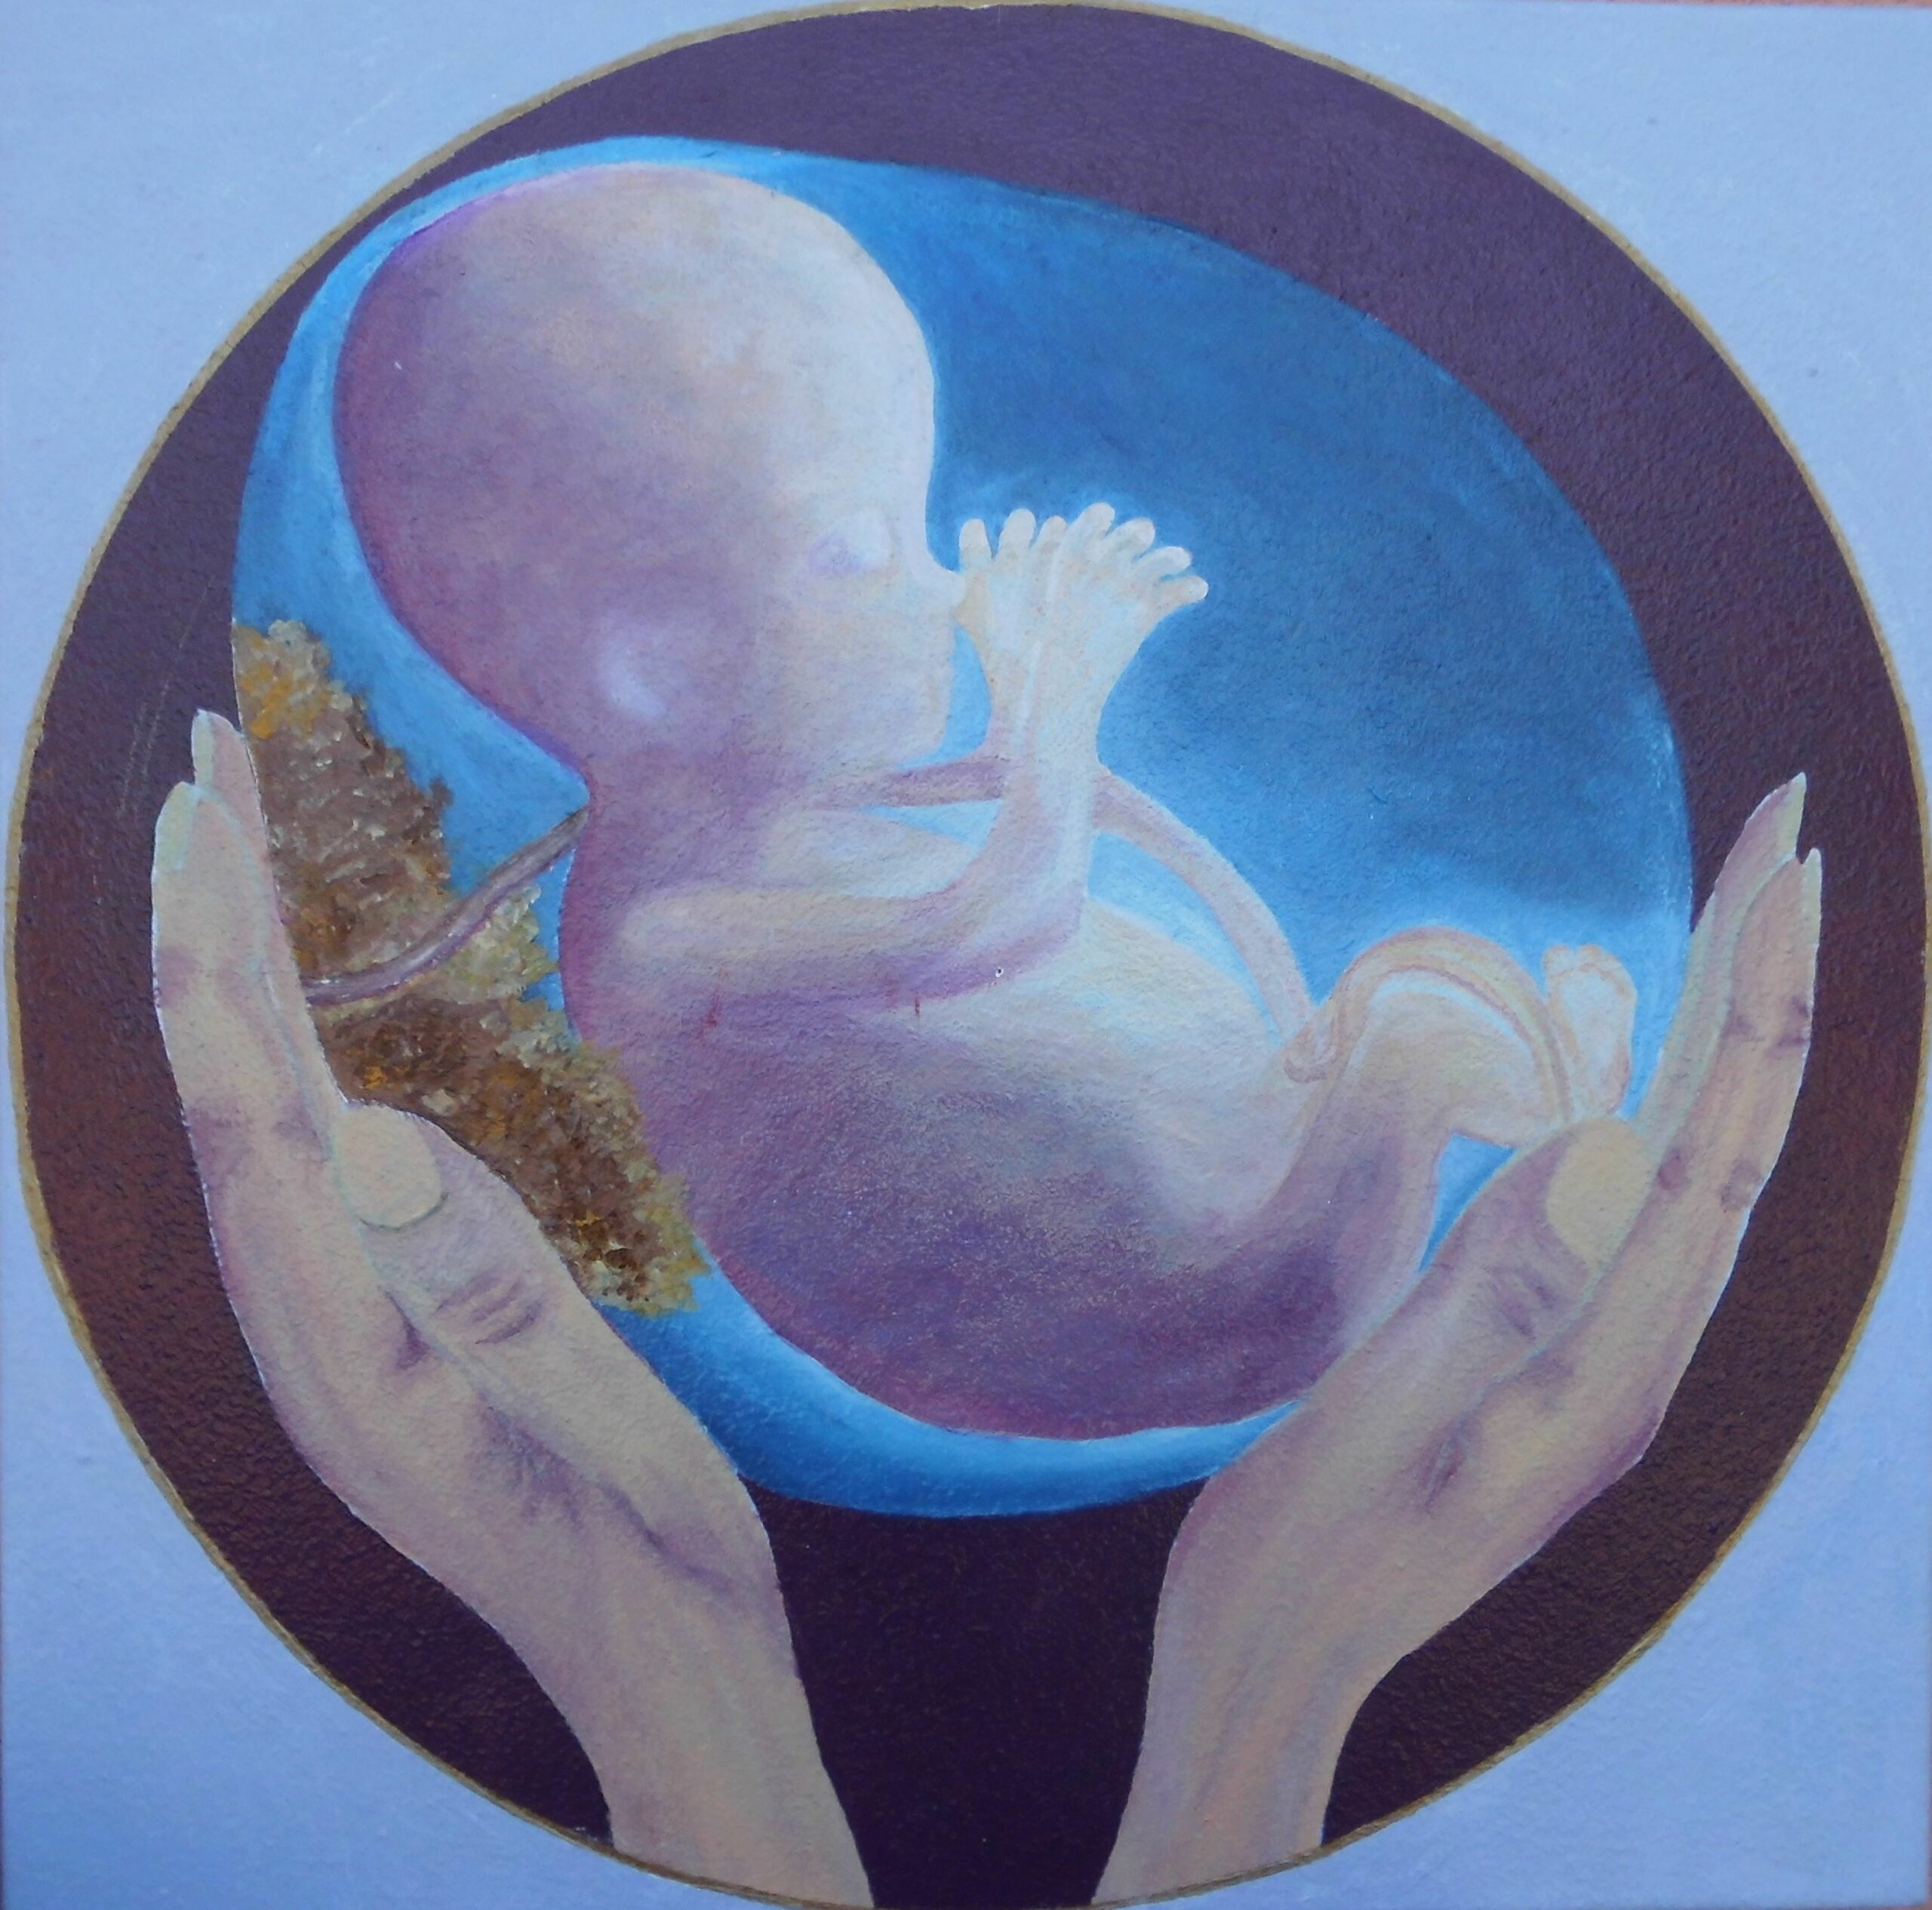 Lire la suite à propos de l’article Accompagnement Prénatal Psycho-Affectif (A.P.P.A) – Une nouvelle méthode d’accompagnement de grossesse – Promouvoir le lien prénatal psycho-affectif